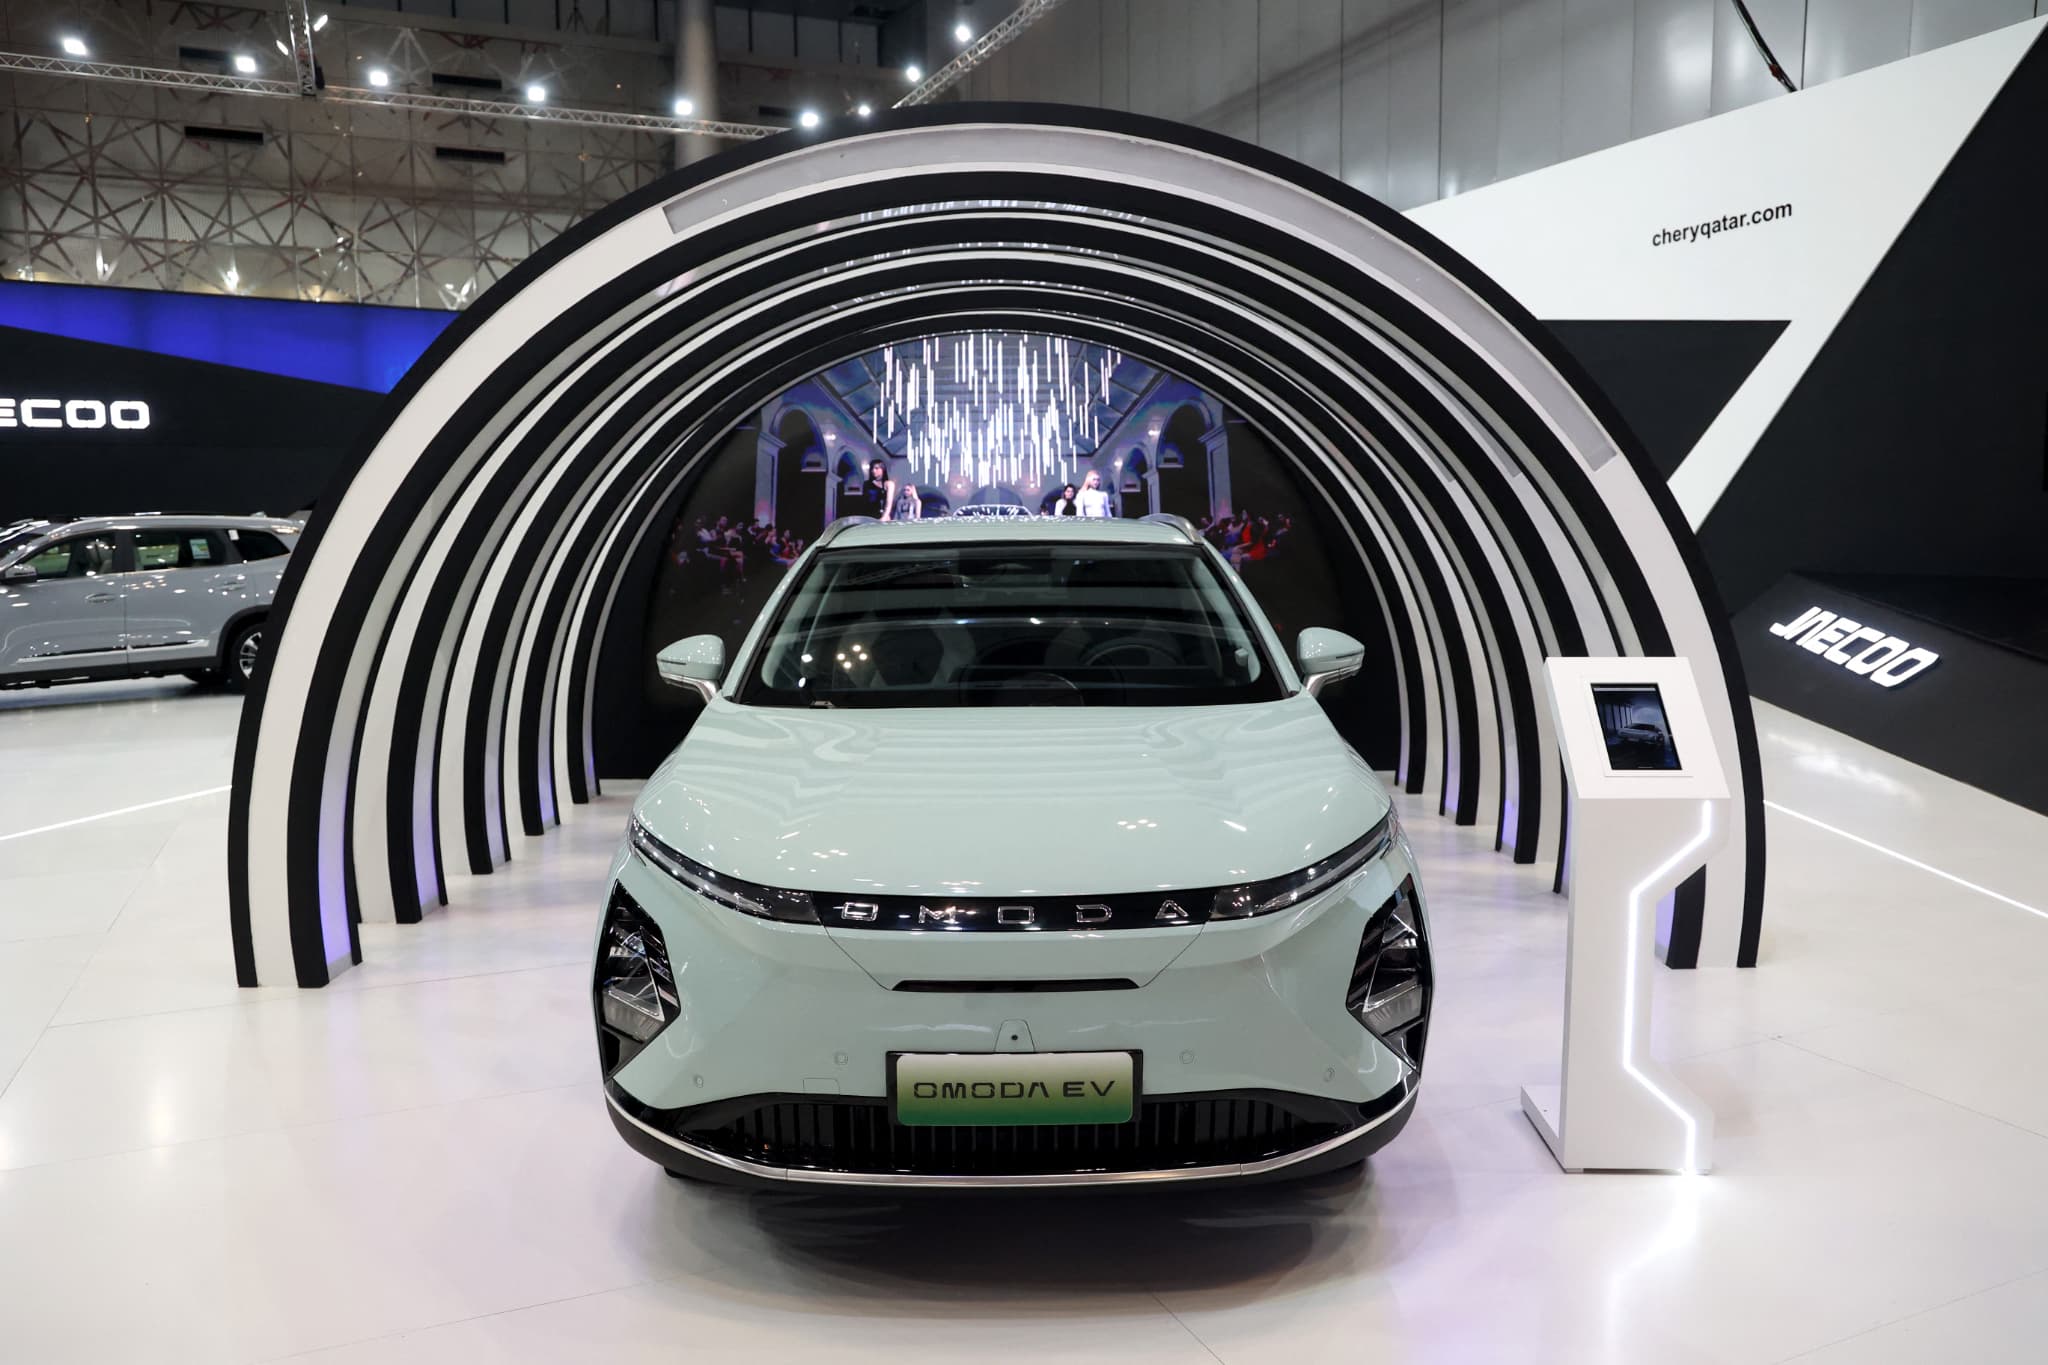 le constructeur automobile chinois chery va installer sa première usine européenne à barcelone